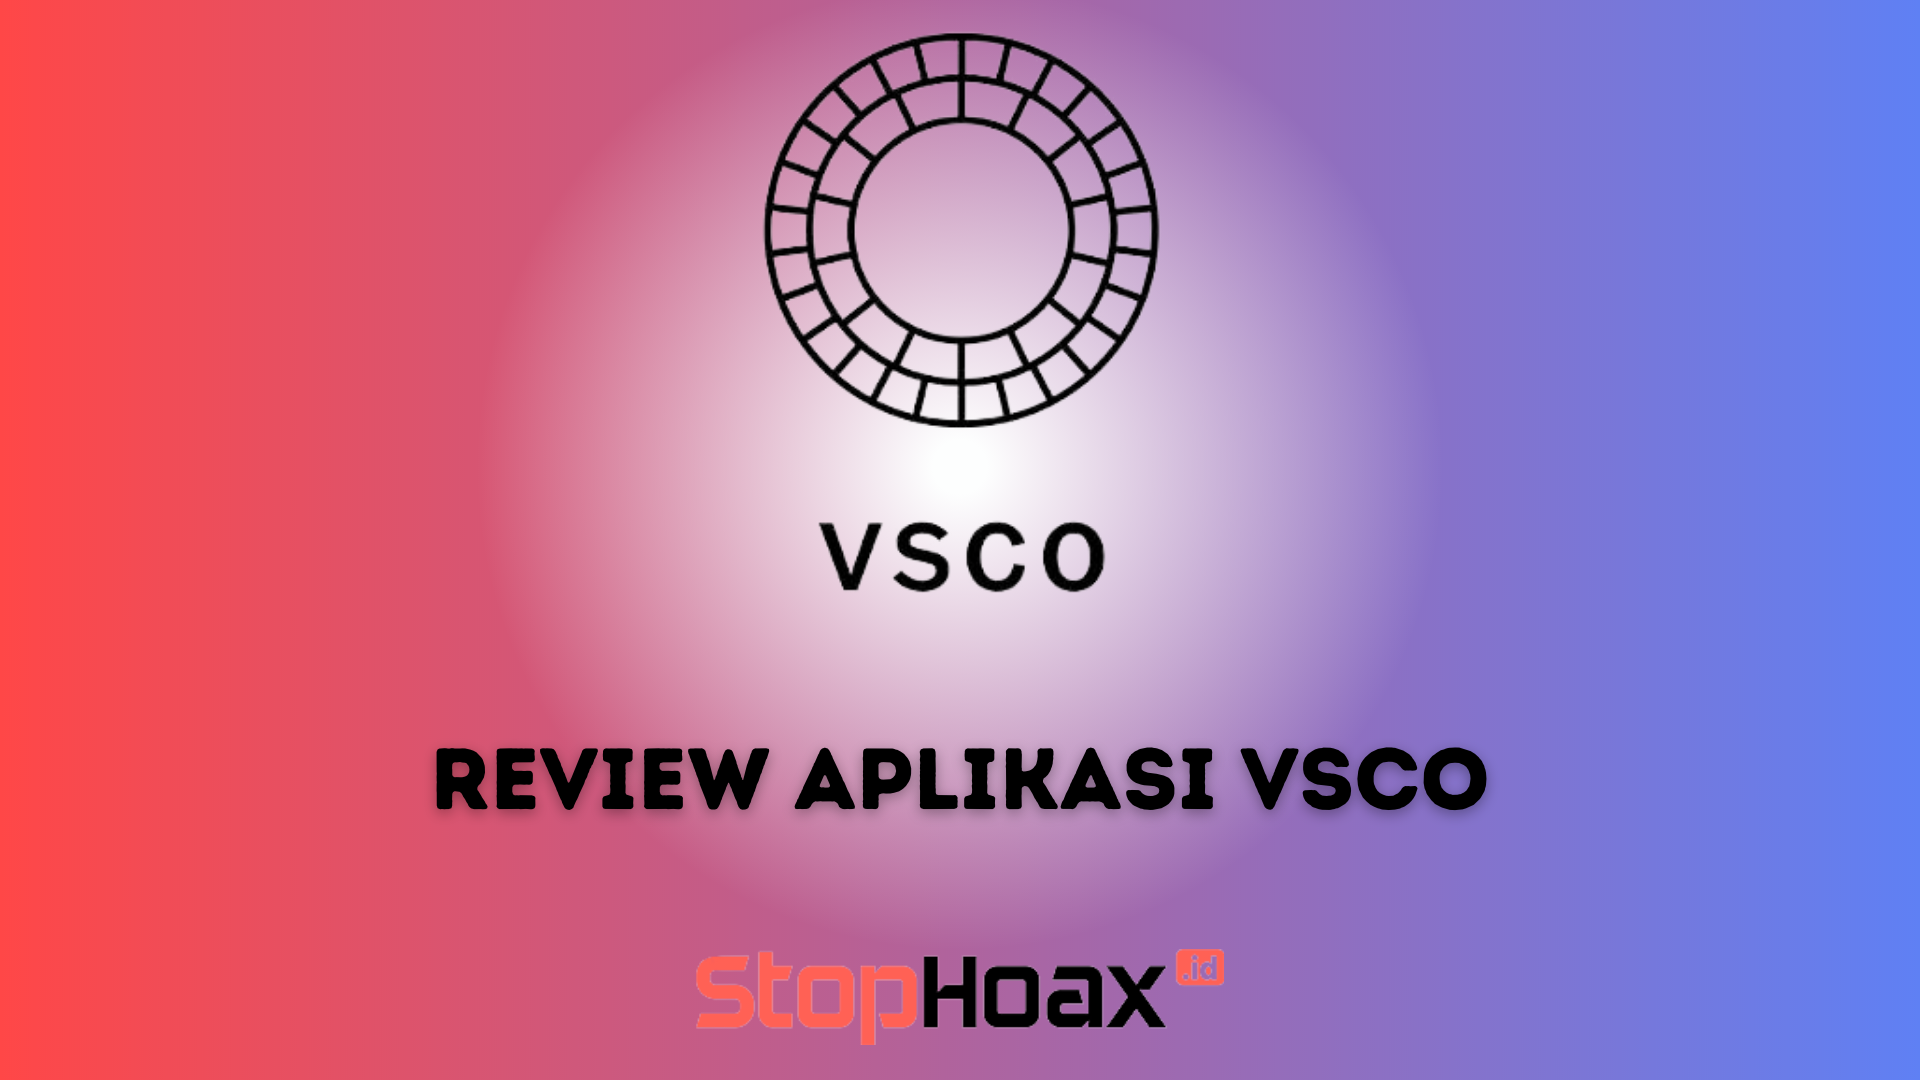 Review Aplikasi VSCO Pengeditan Foto yang Menyenangkan dan Mudah